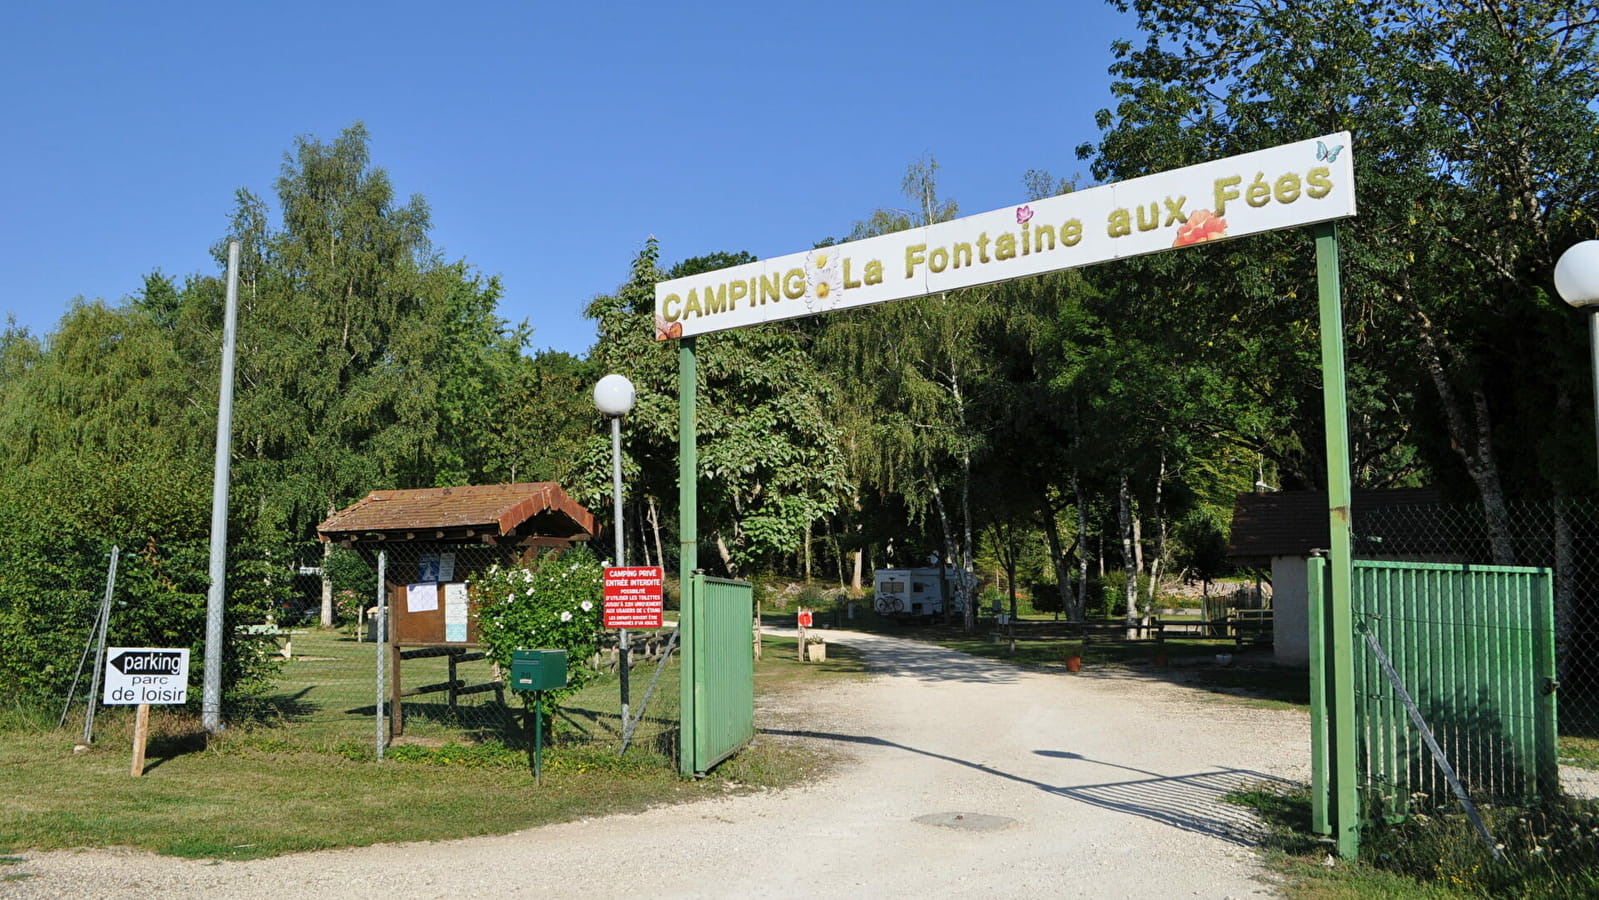 Camping-caravaning La Fontaine aux fées